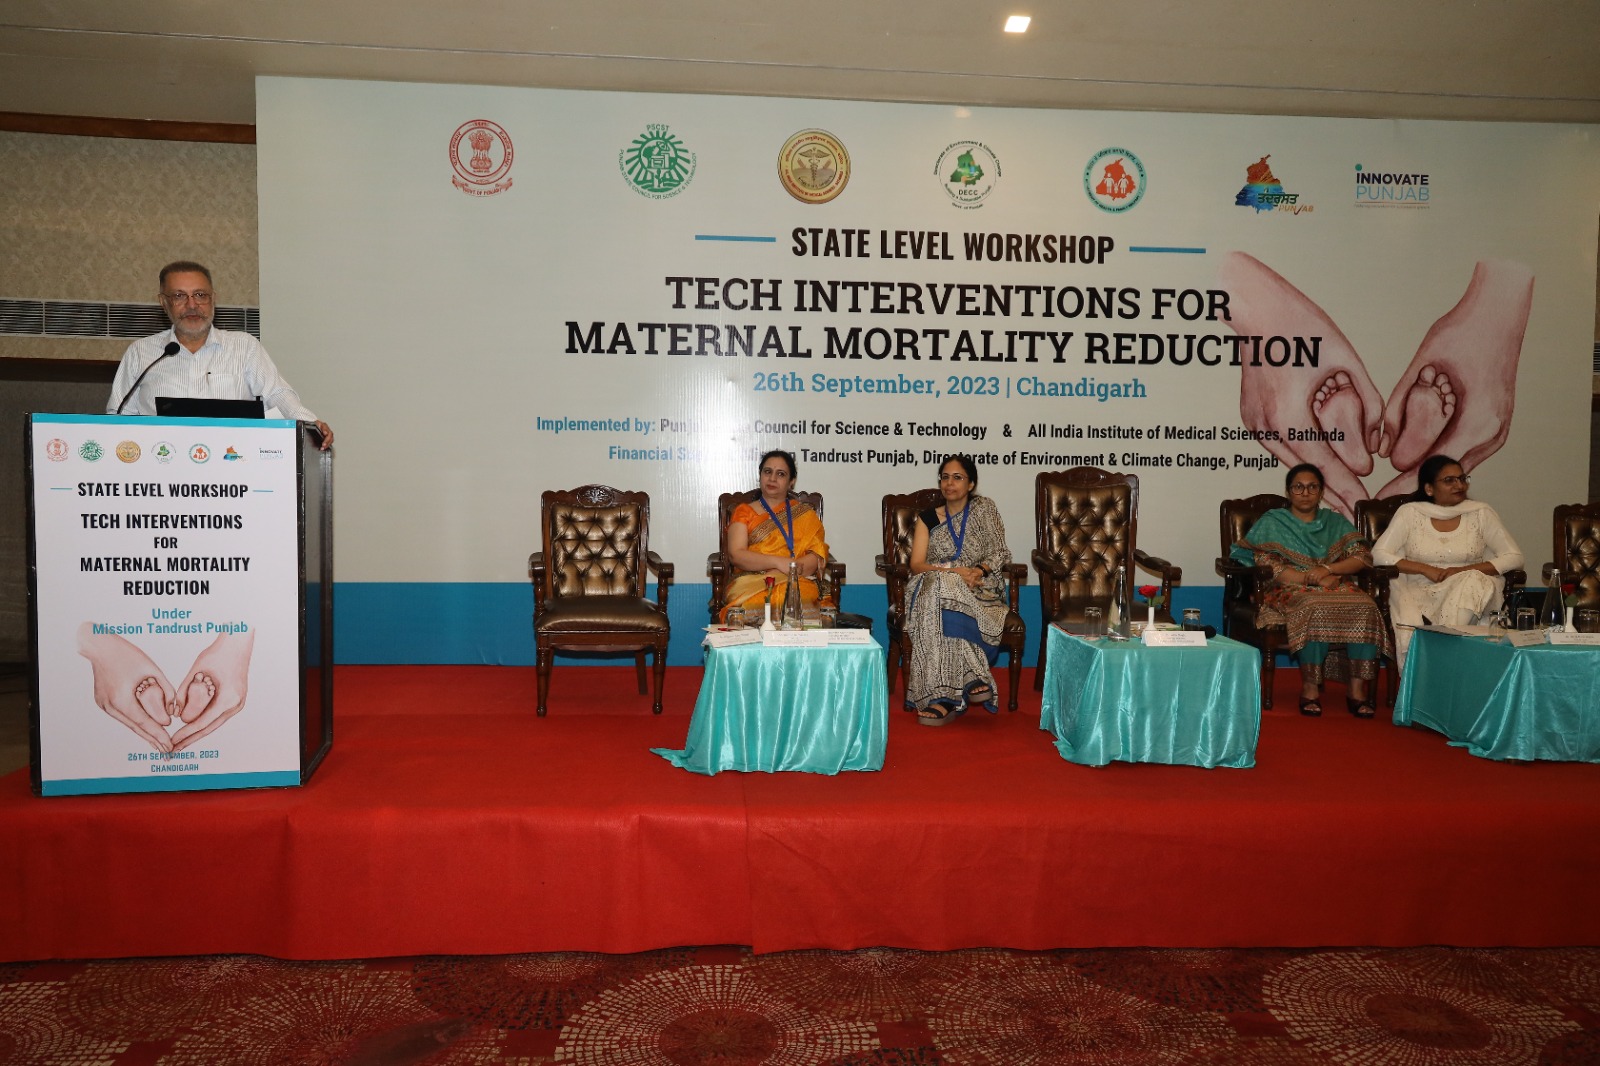 पंजाब सरकार माताओं की मृत्यु दर को कम करने के लिए सरकारी स्वास्थ्य संस्थानों में तकनीकी सुविधांए प्रदान करेगी: डॉ. बलबीर सिंह